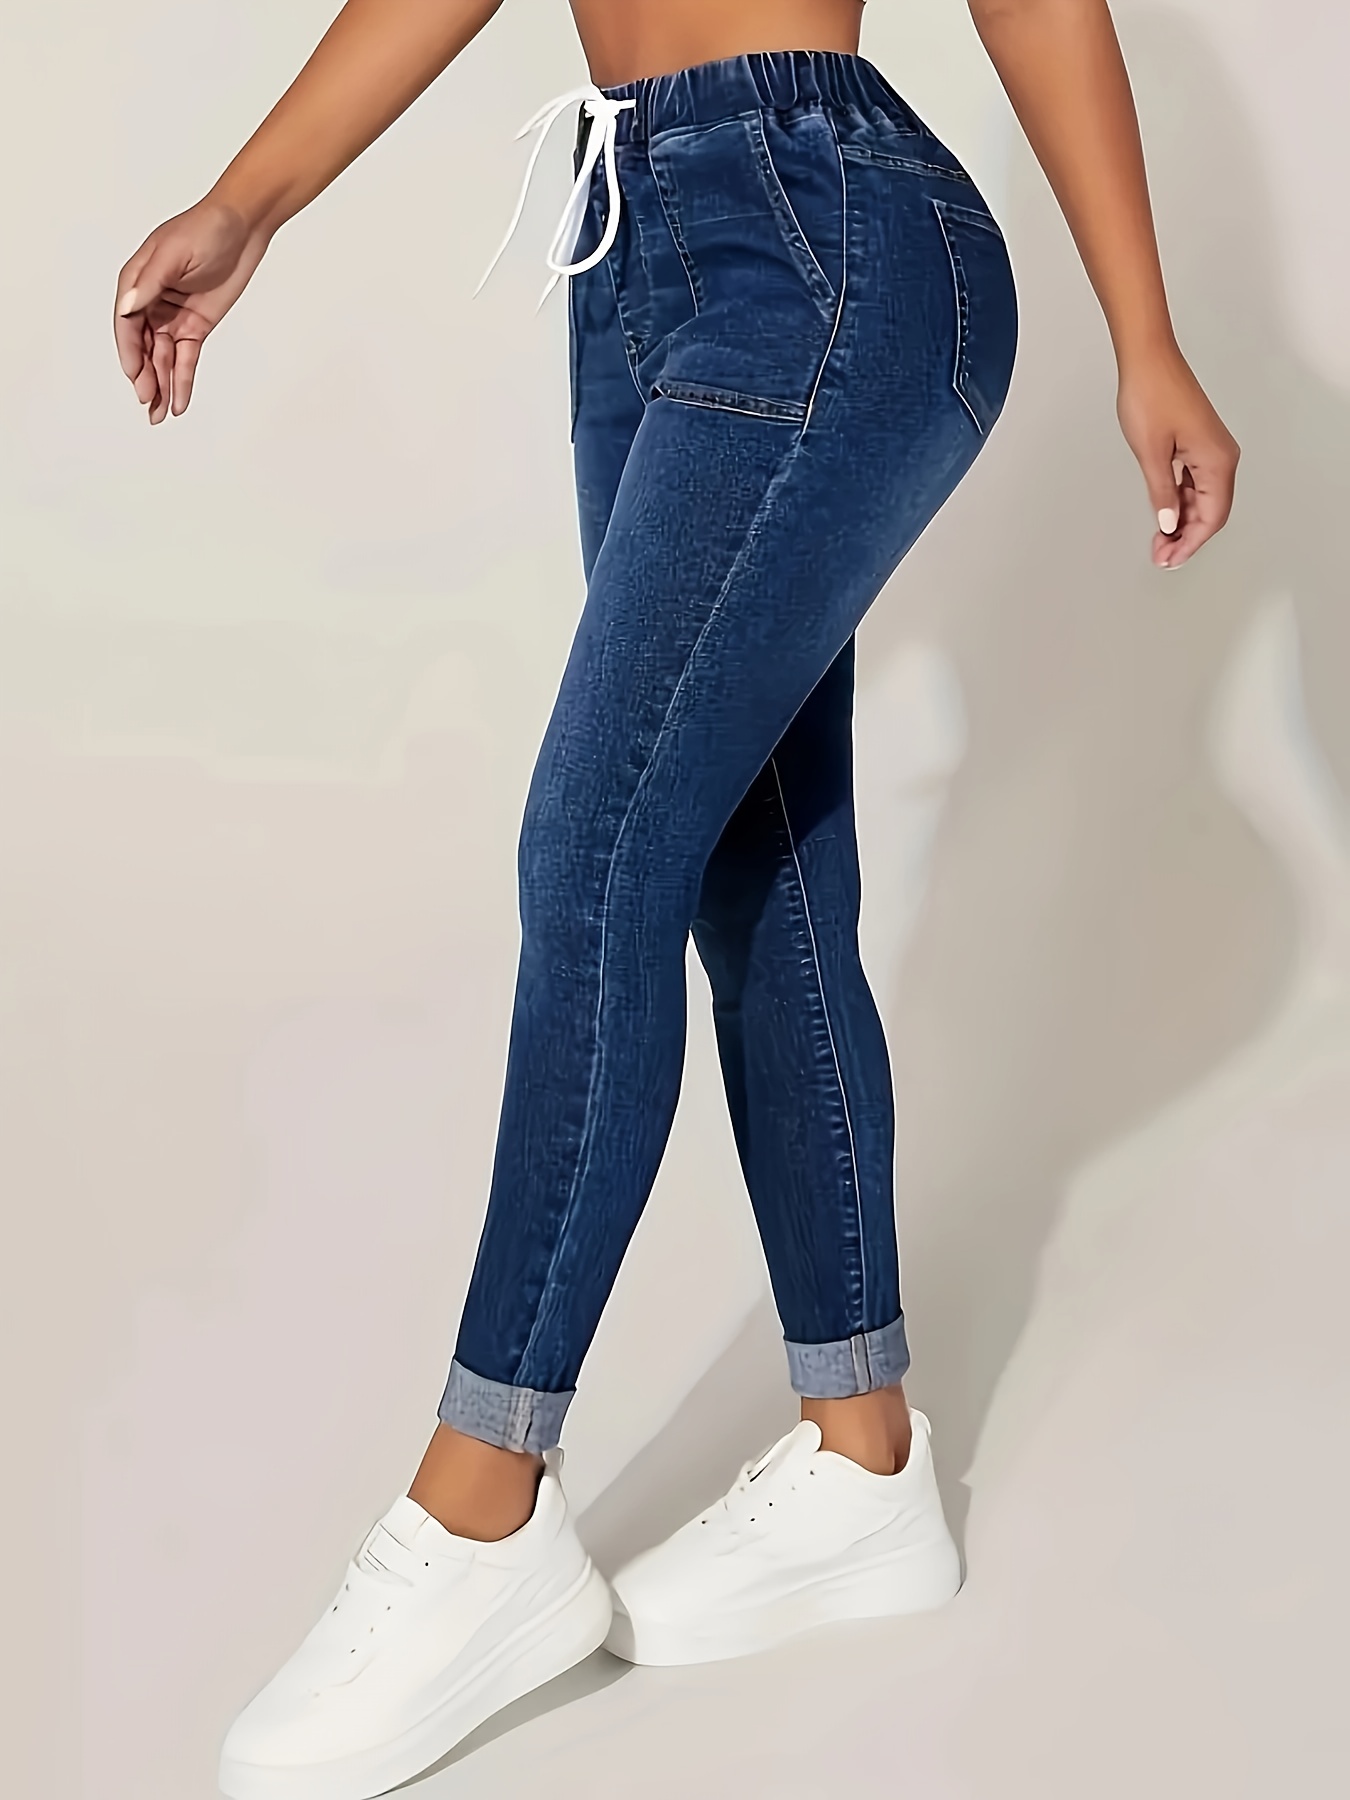 Jeans Tipo Jogger Lavados Con Múltiples Bolsillos, Jeans Cargo De Moda  Lavados Estilo Urbano, Jeans Y Ropa De Mezclilla Para Mujer